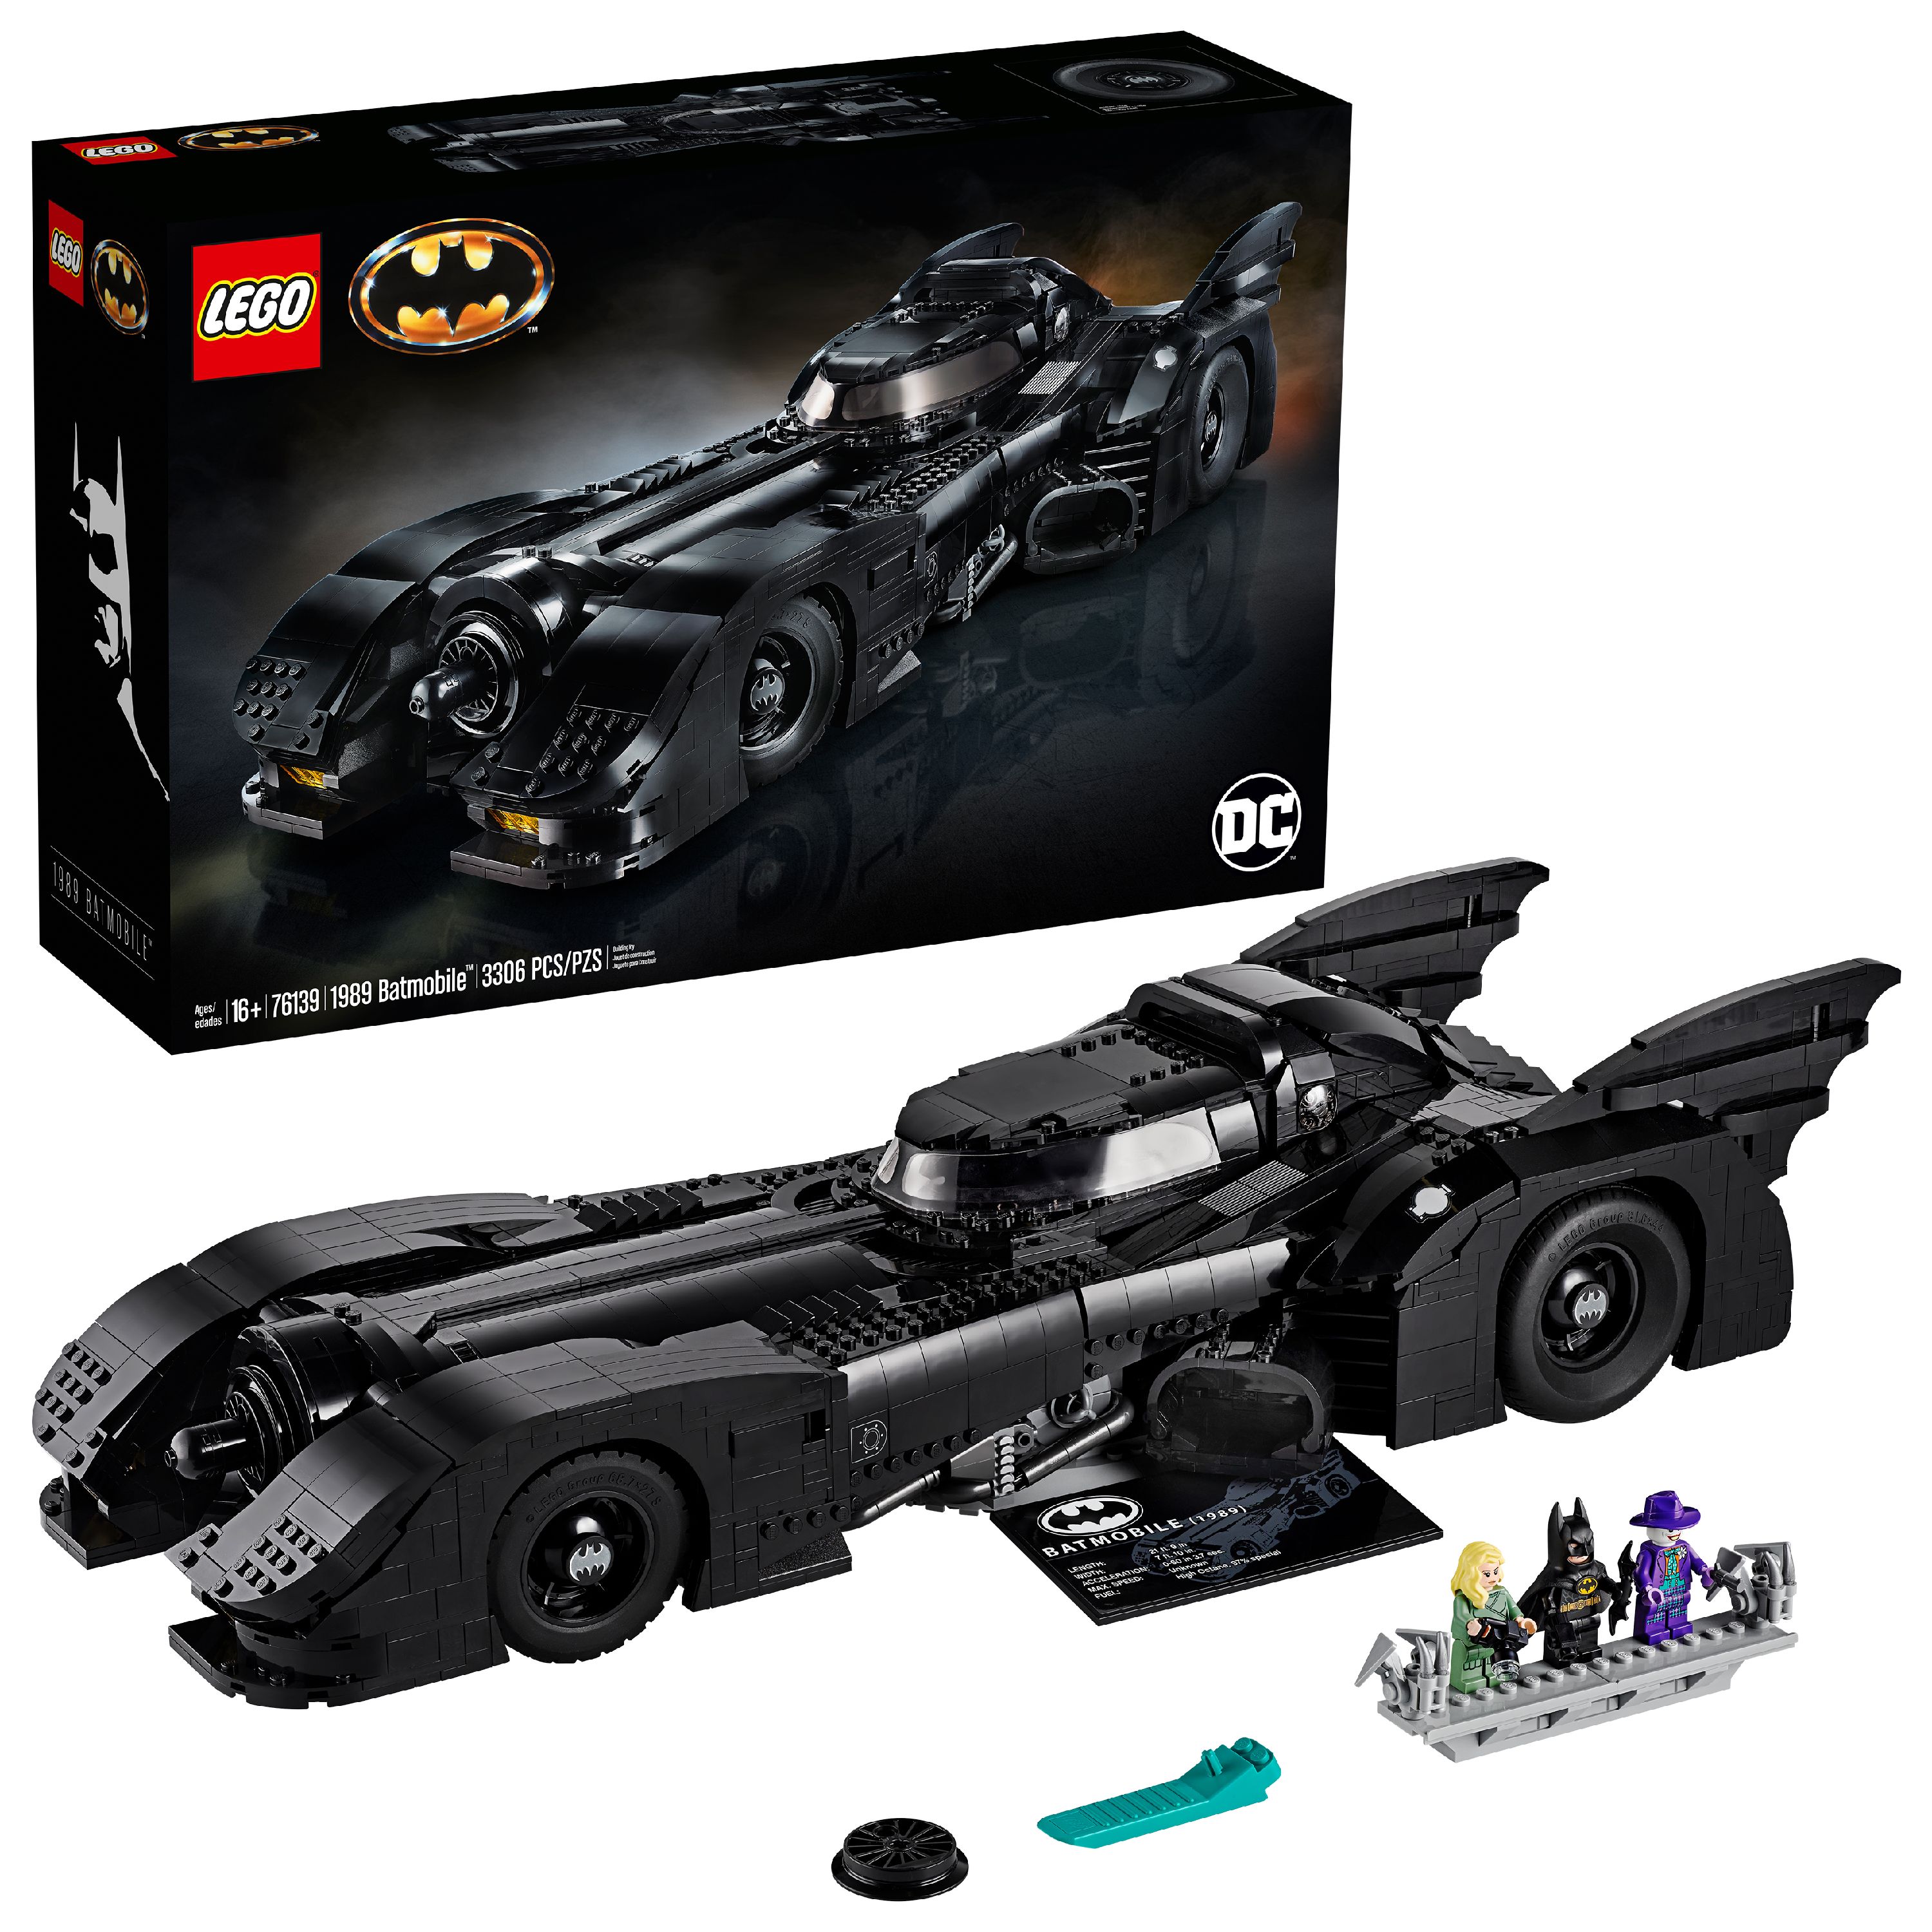 LEGO 76139 DC Batman 1989 Batmobile Building Kit (3,306 Piece) - image 1 of 7